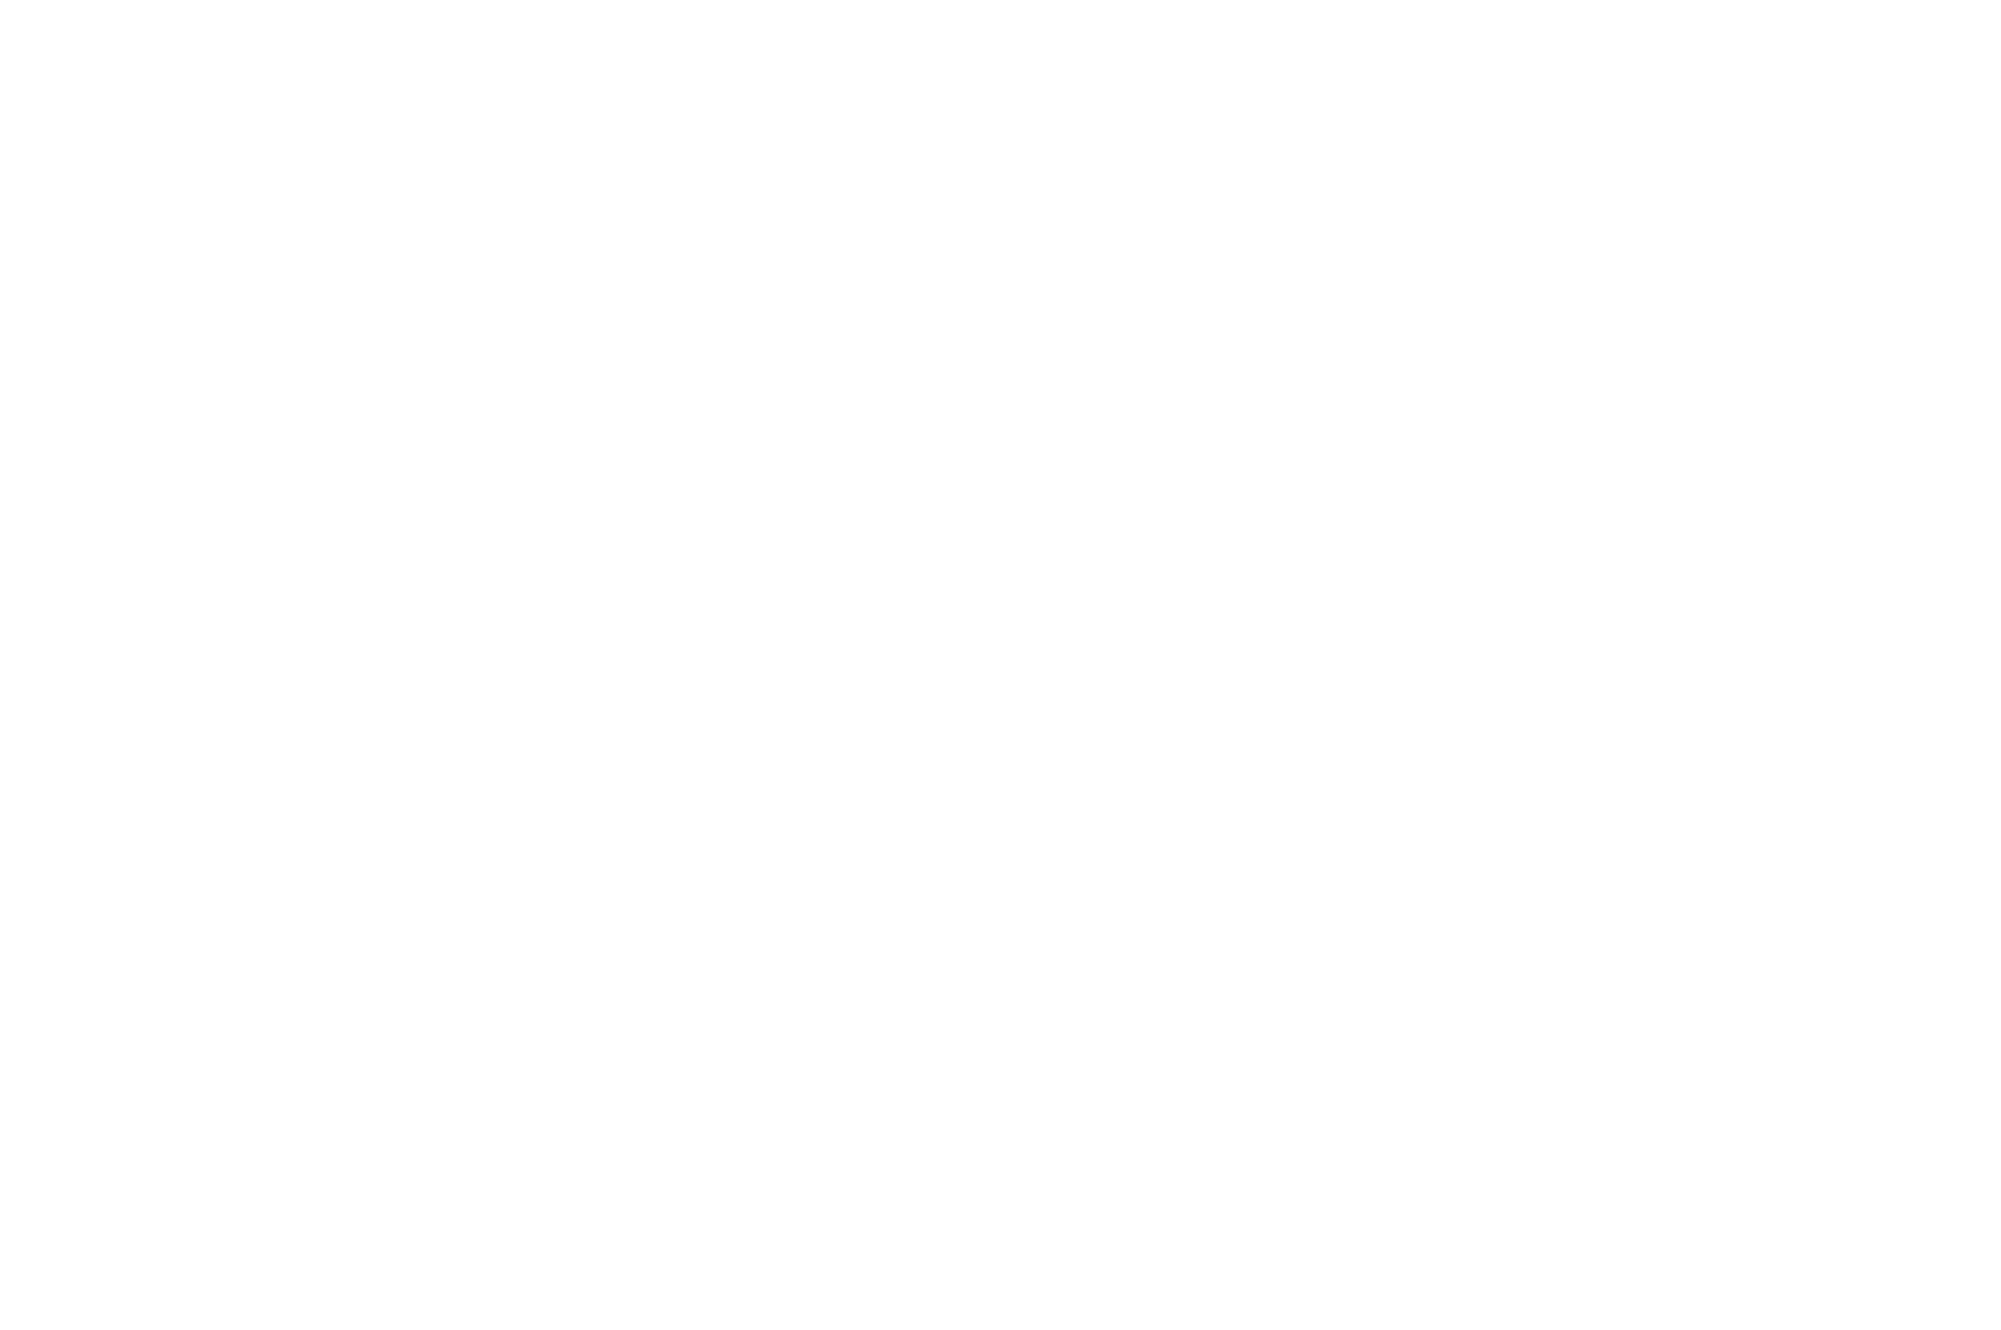 Casper College 75th Anniversary